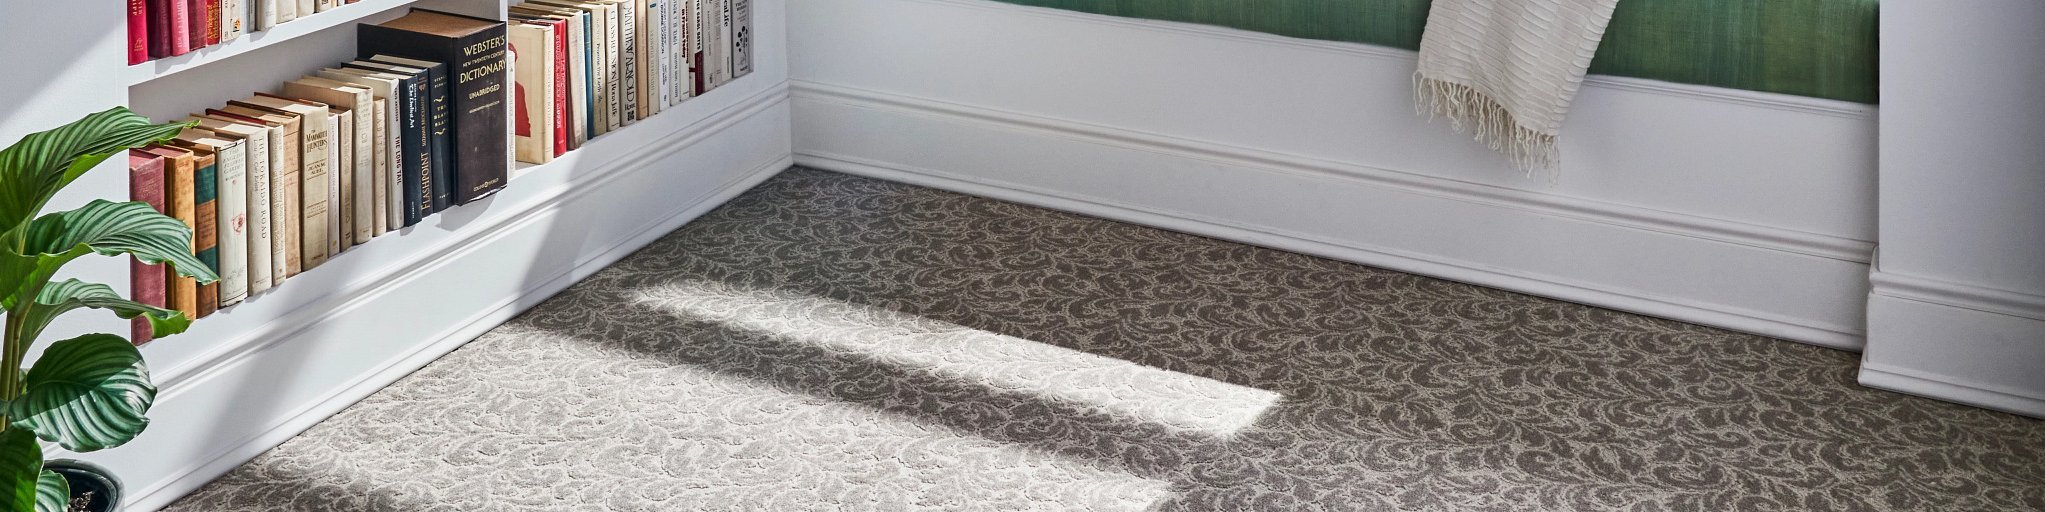 patterned carpet in bedroom